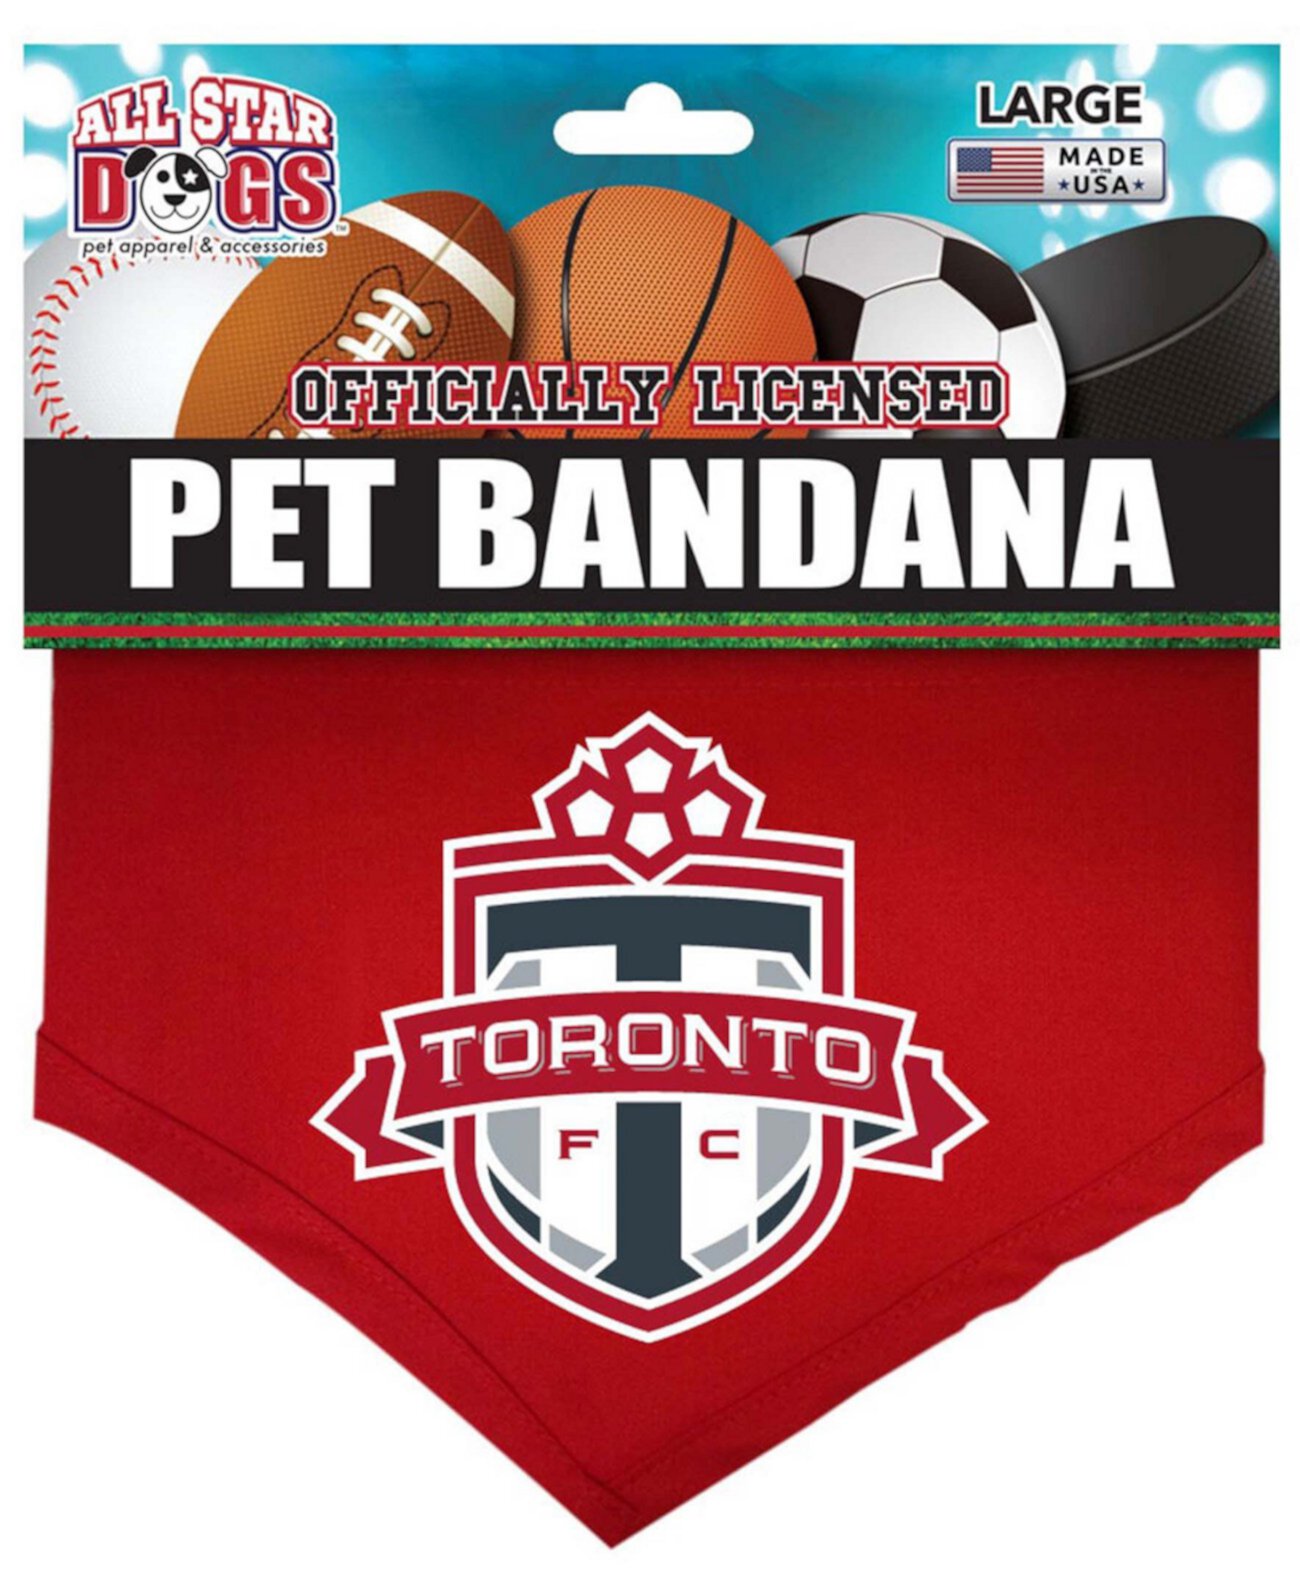 Бандана Red Toronto FC Pet All Star Dogs